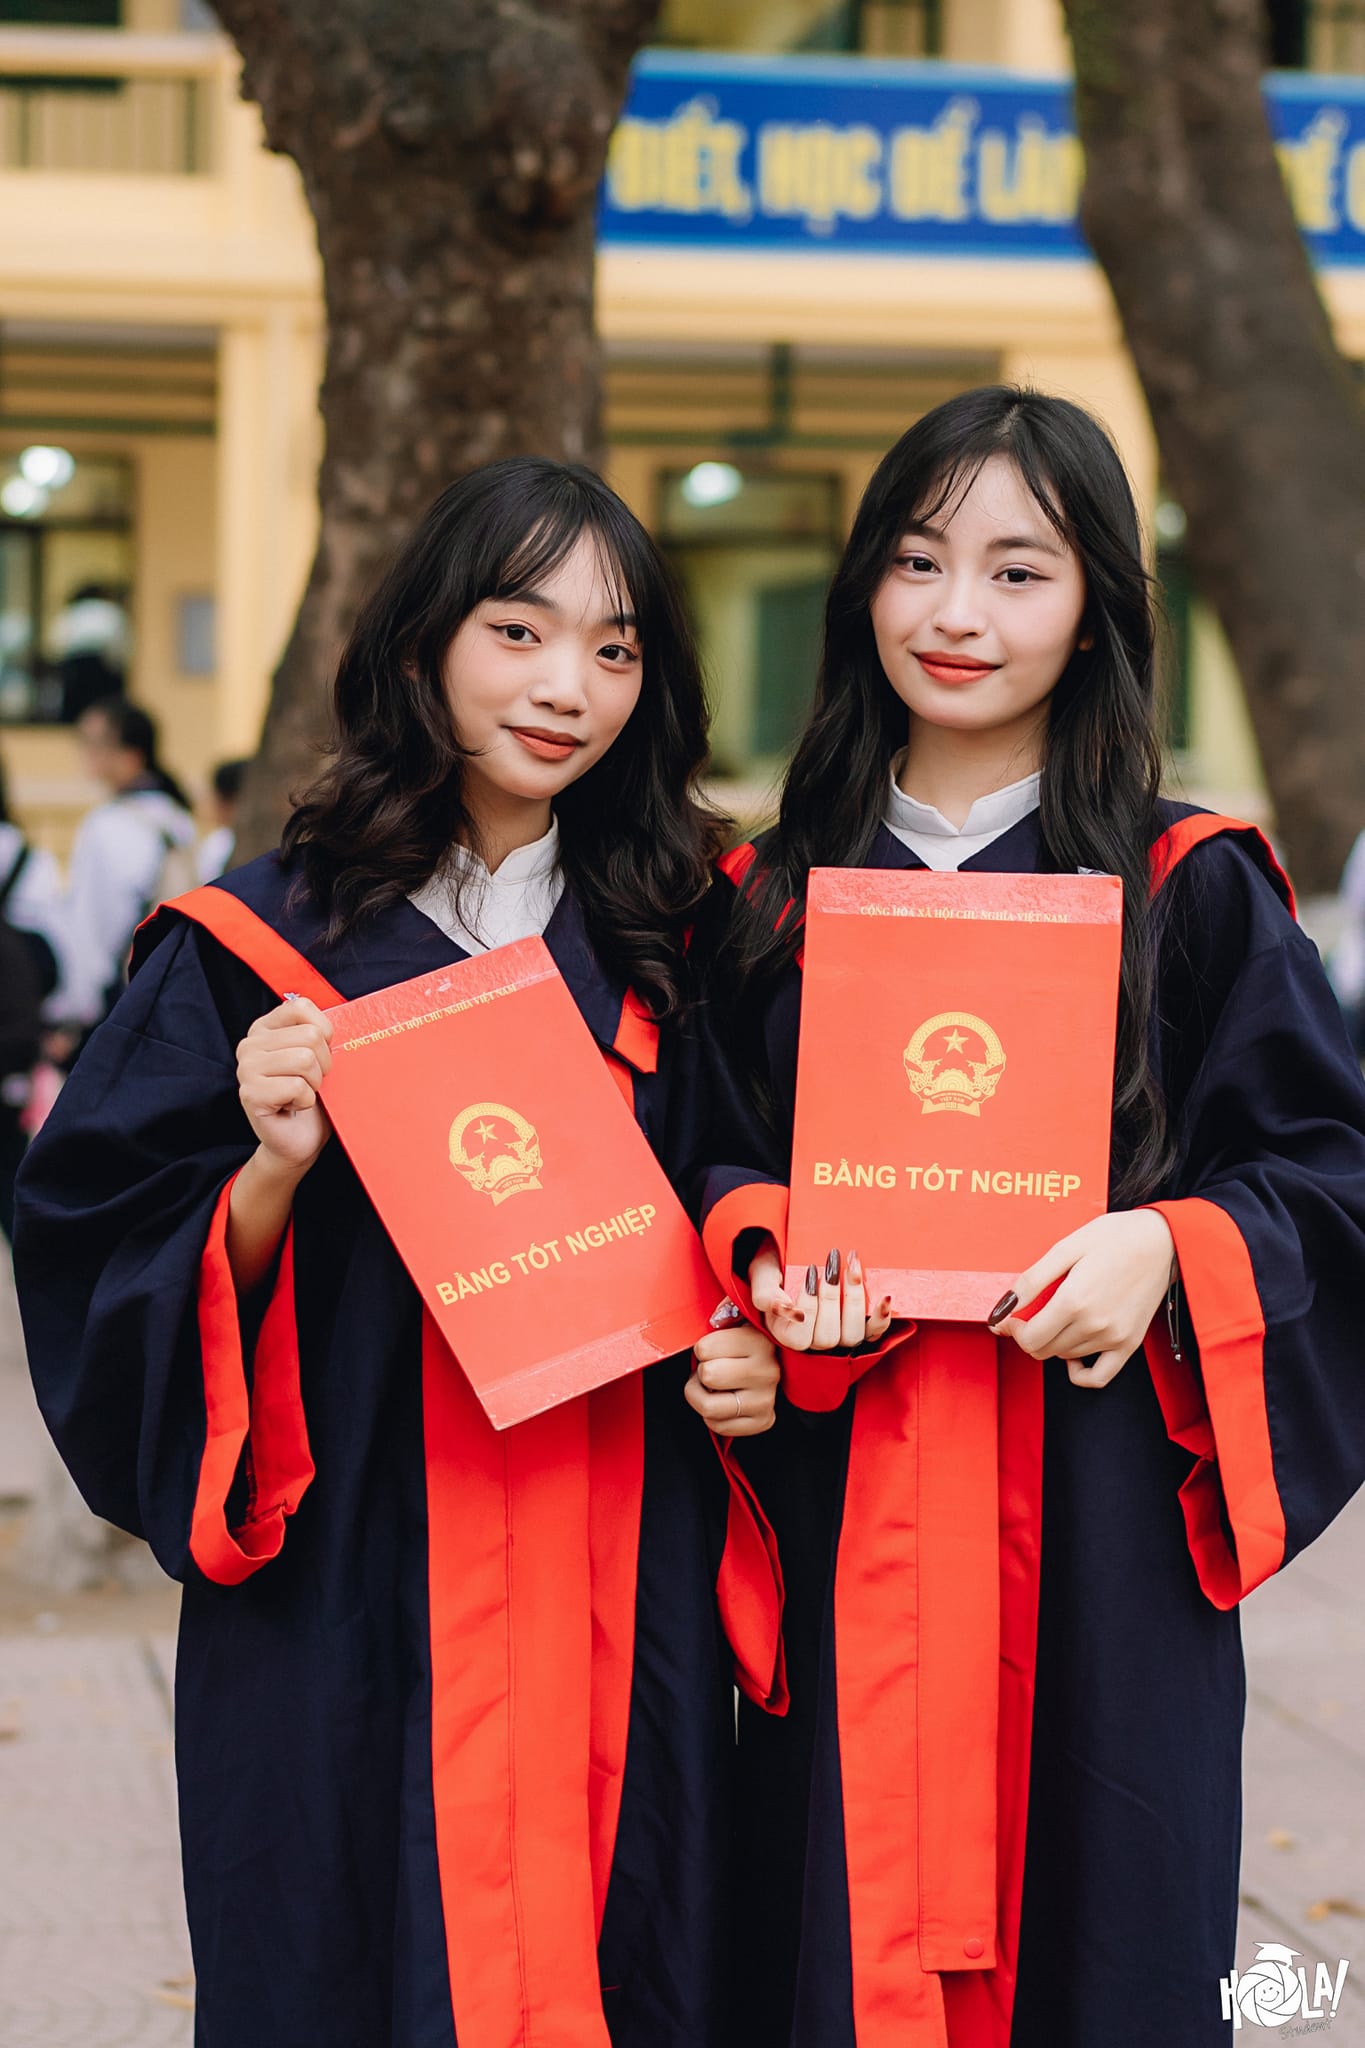 Nhan sắc cực xinh xắn, phong cách chuẩn Gen Z con gái cố nghệ sĩ Giang Còi vừa đỗ 3 trường đại học - Ảnh 3.